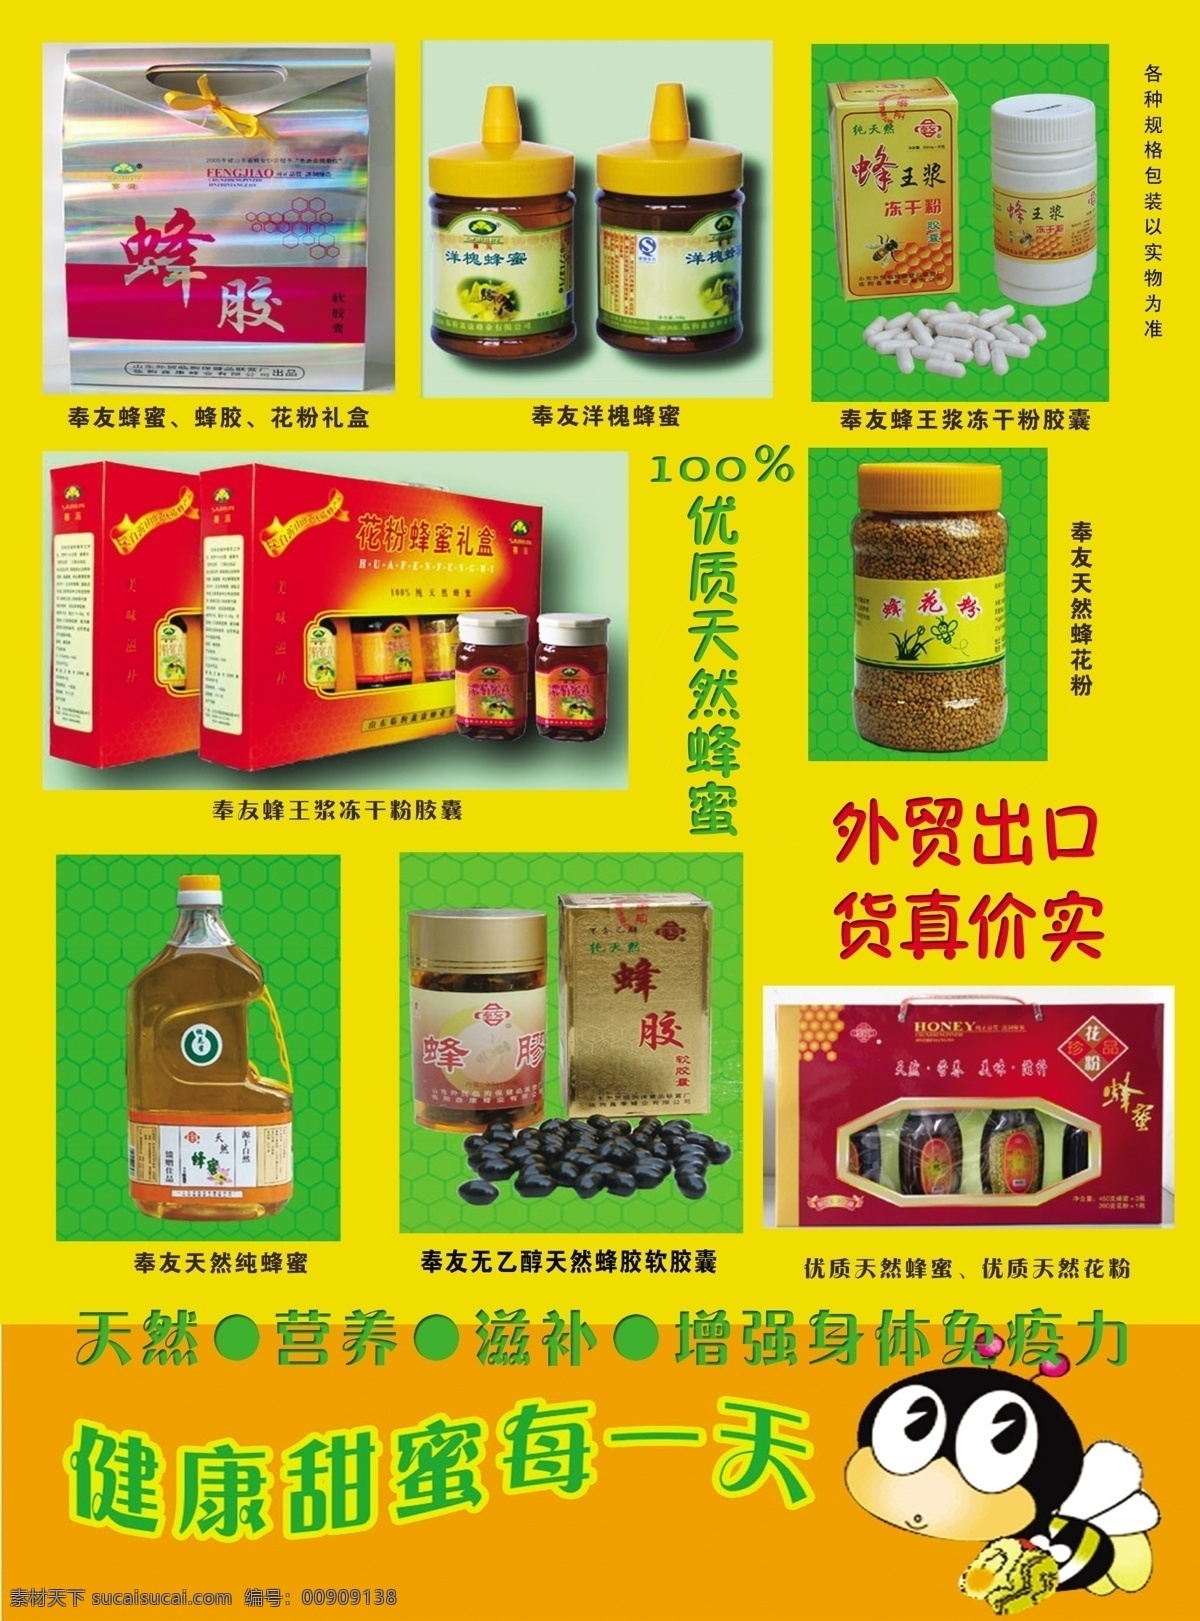 蜂蜜 彩页 卡通 小蜜蜂 宣传口号 源文件 蜂蜜彩页 蜂蜜产品 瓶装 盒装 海报 宣传海报 宣传单 dm